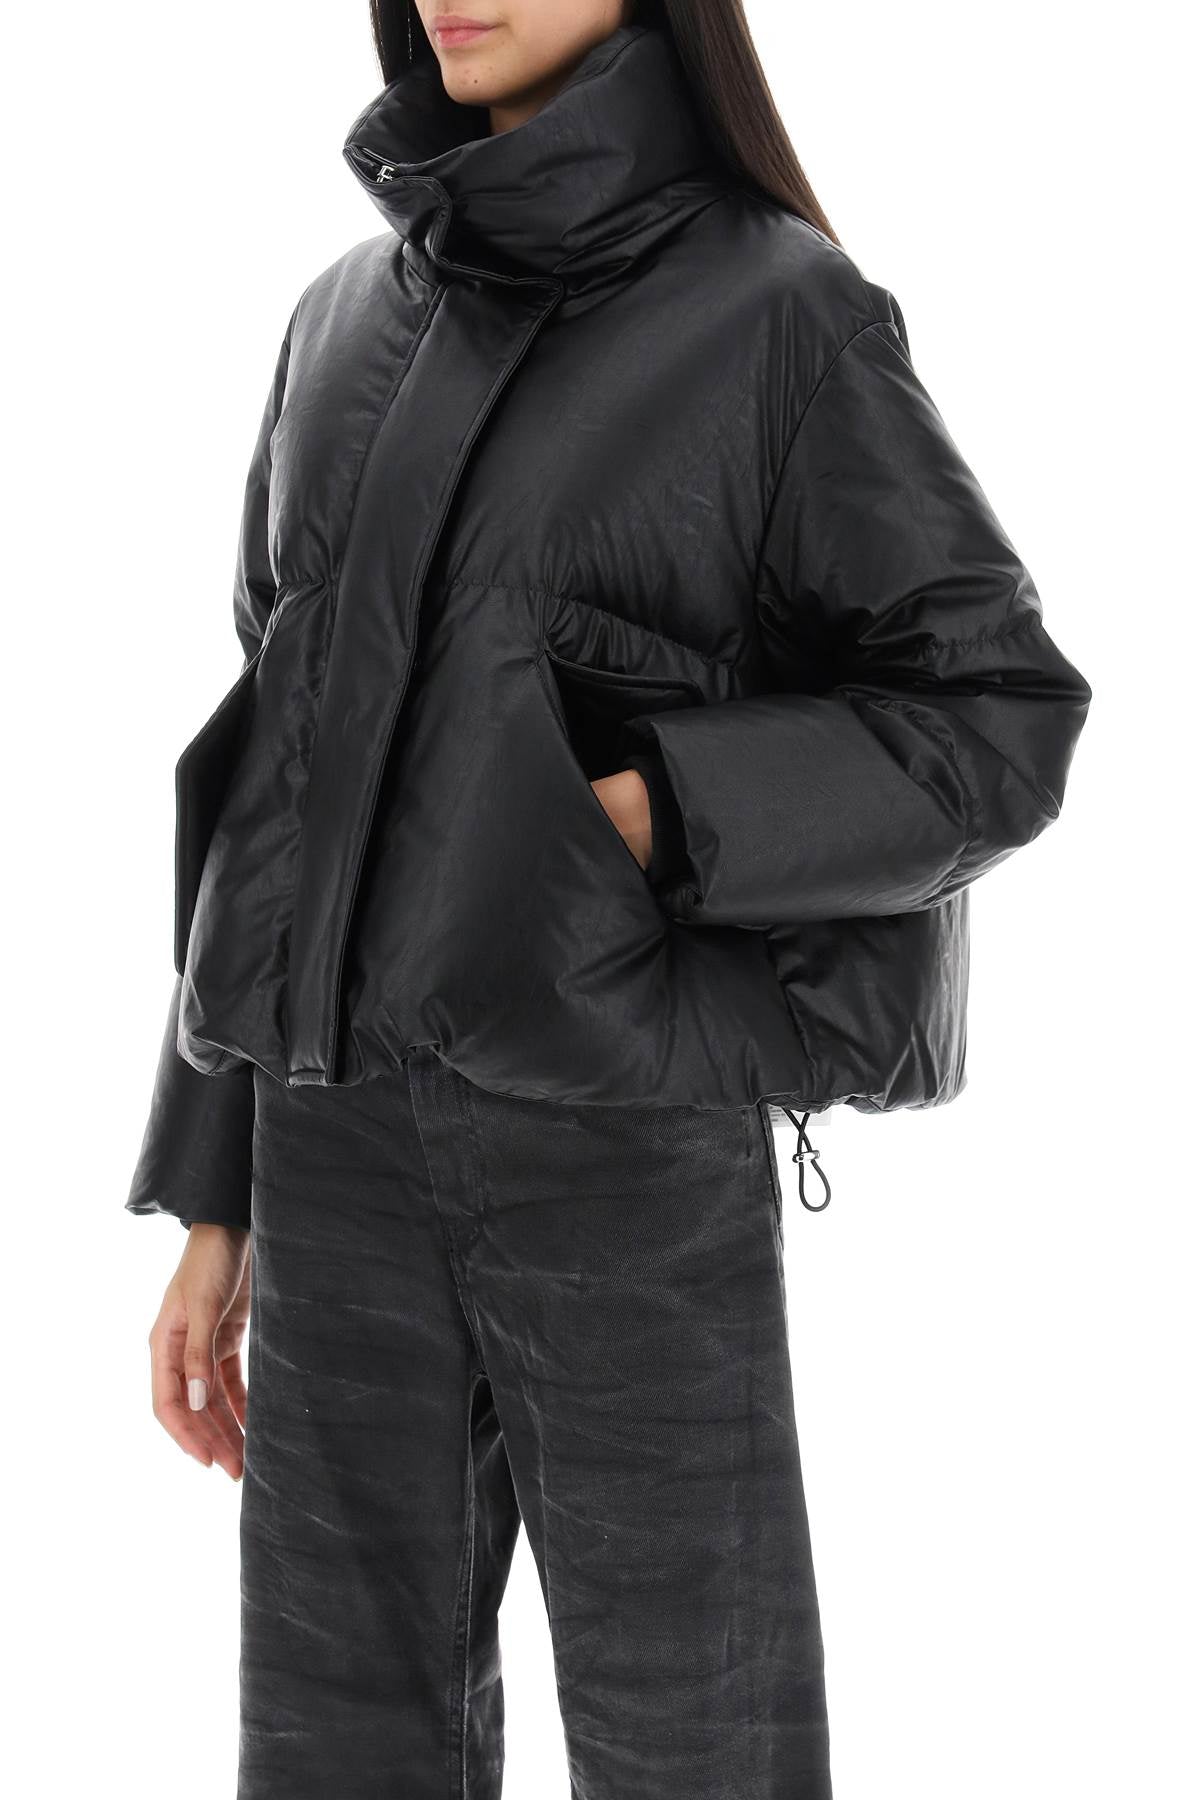 MM6 Maison Margiela Mm6 maison margiela faux leather puffer jacket with back logo embroidery